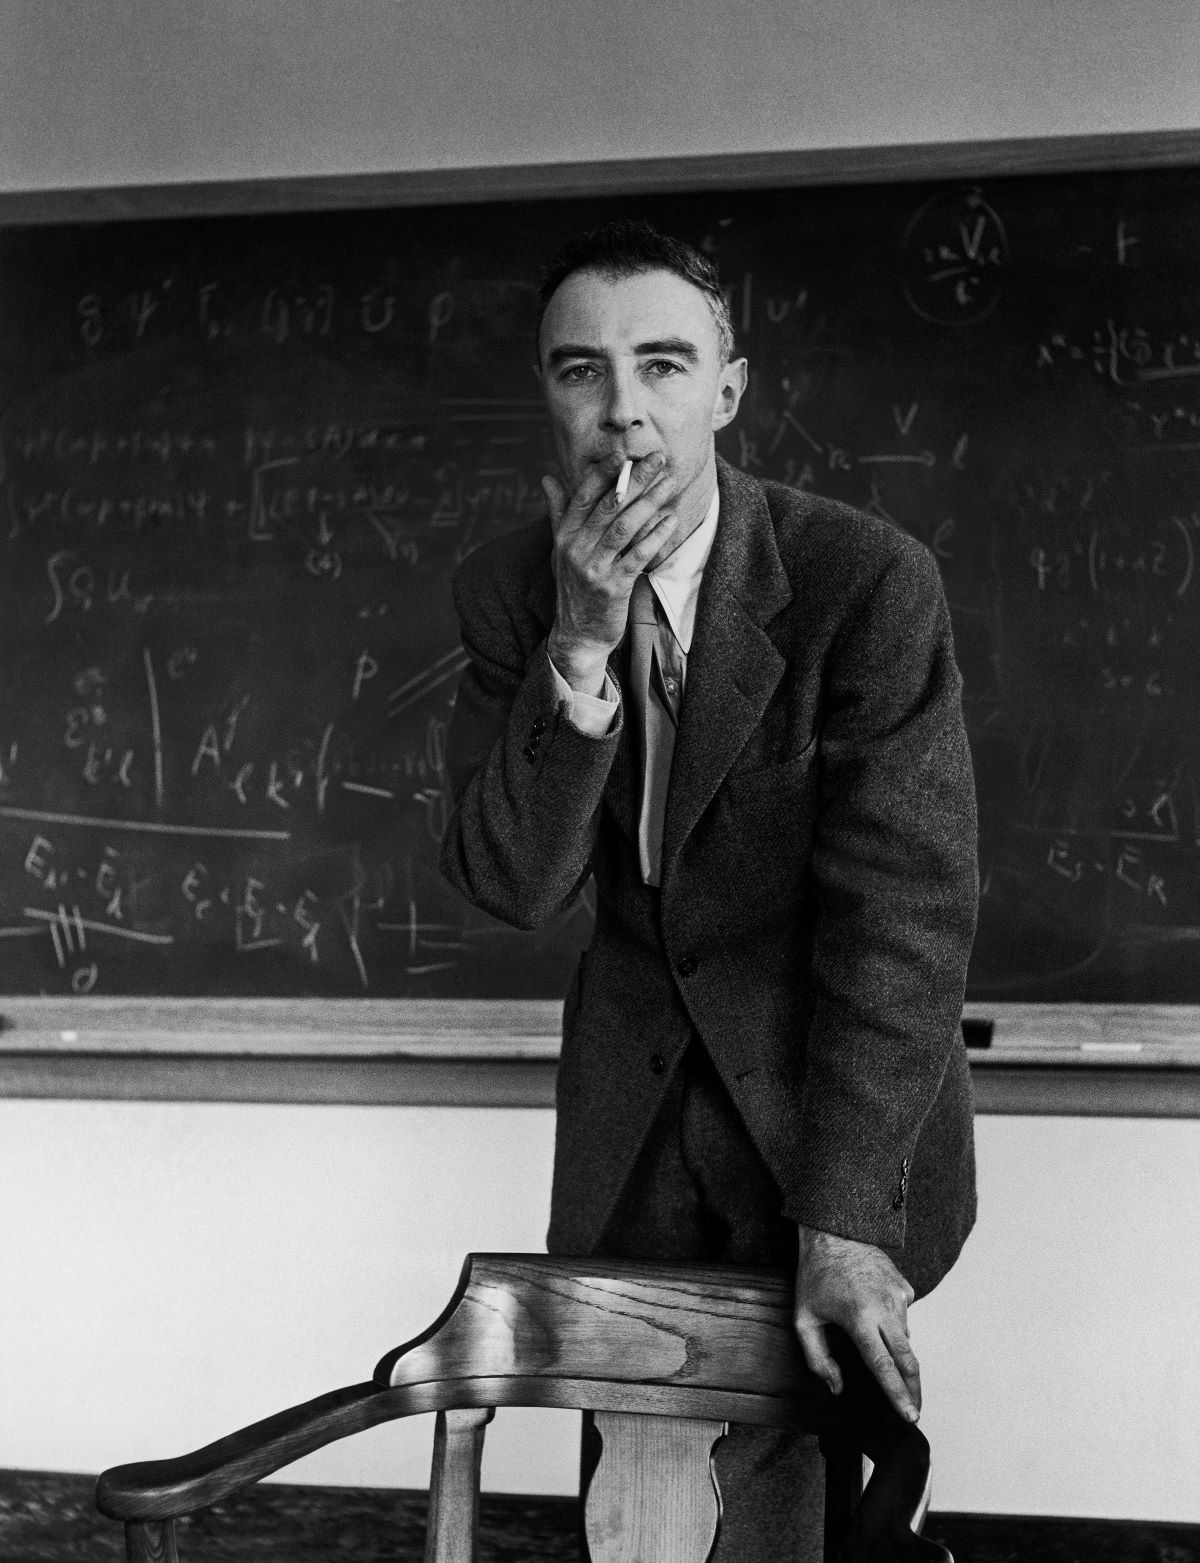 J. Robert Oppenheimer, Princeton, New Jersey, 1947